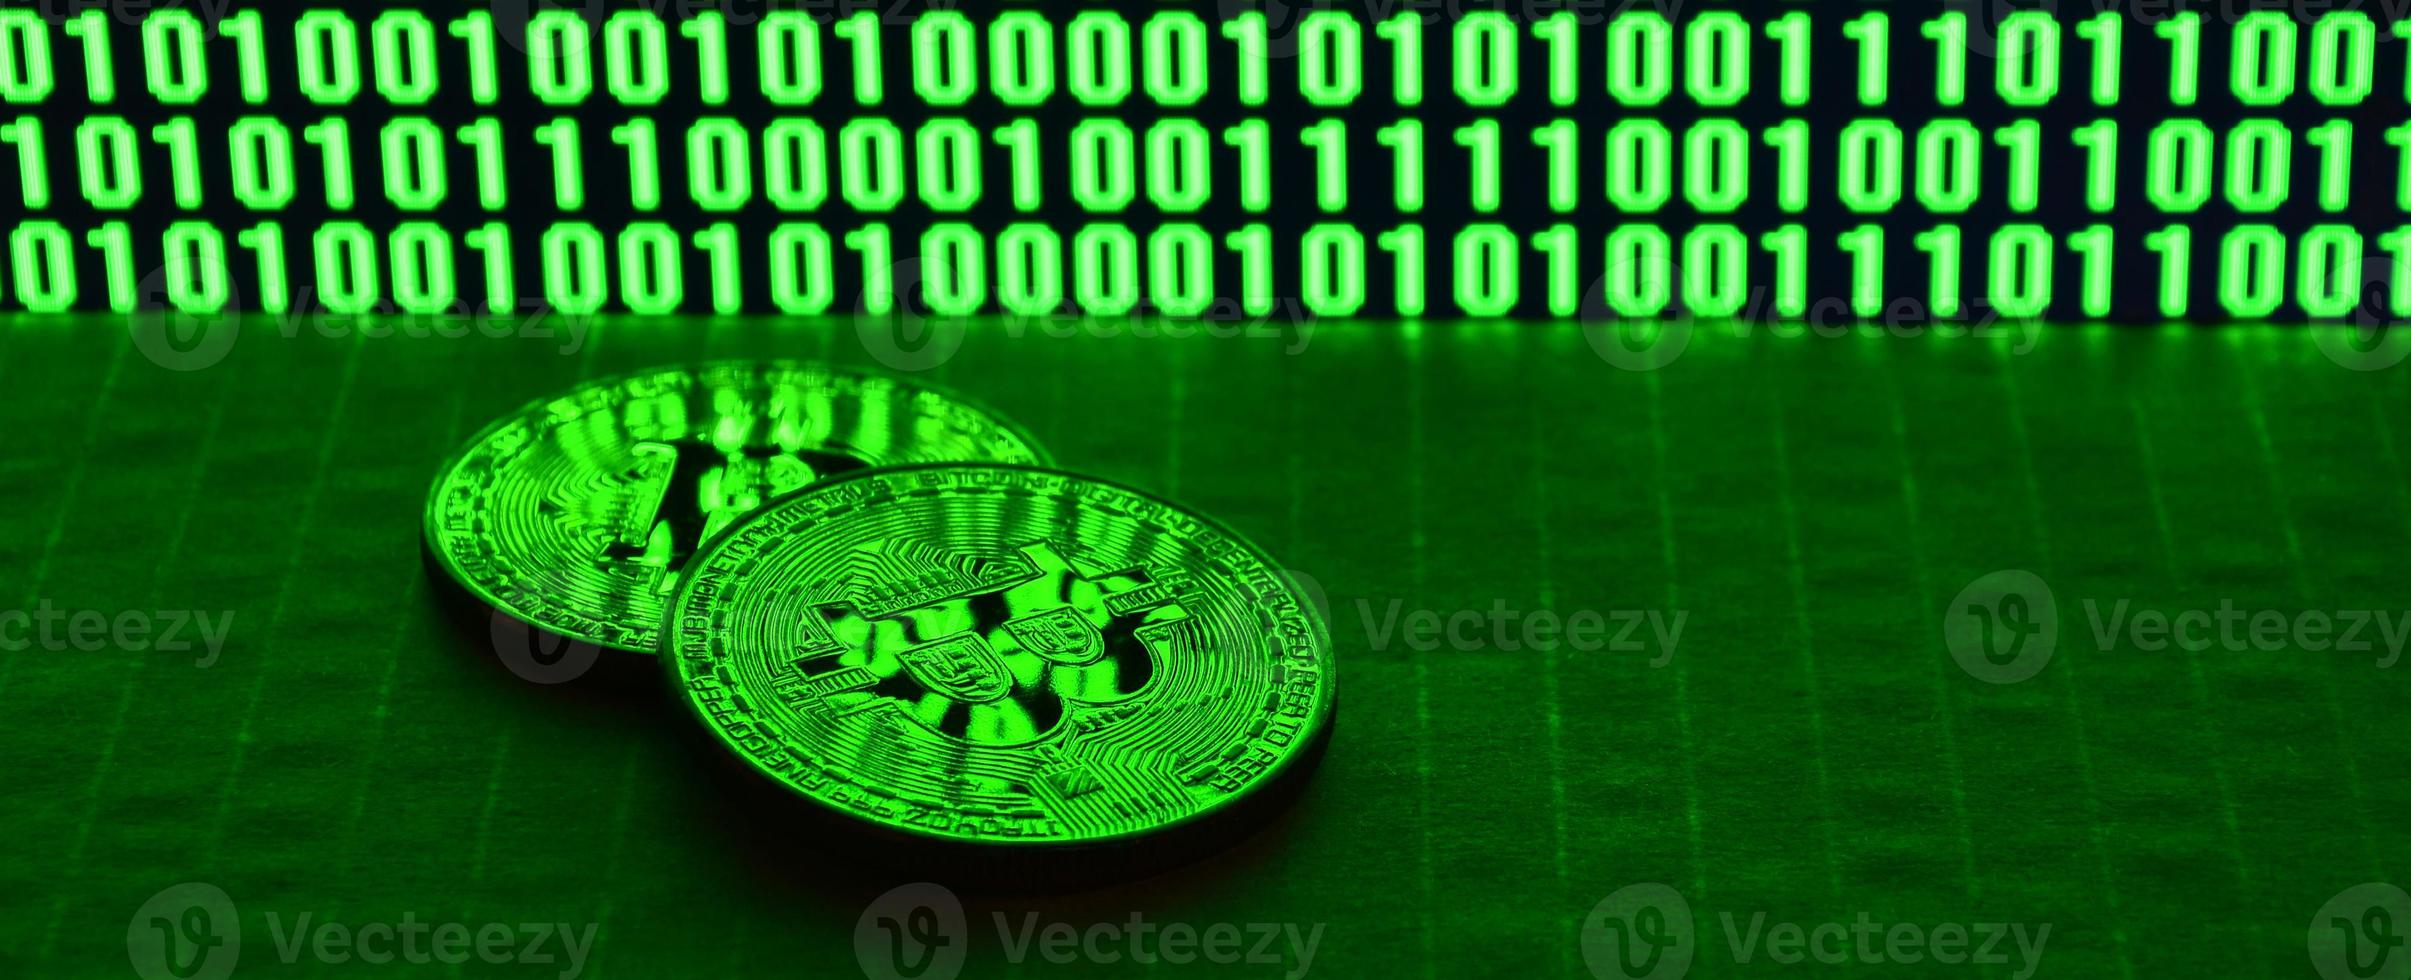 um par de bitcoins está em uma superfície de papelão no fundo de um monitor representando um código binário de zeros verdes brilhantes e unidades de um em um fundo preto. iluminação baixa chave foto